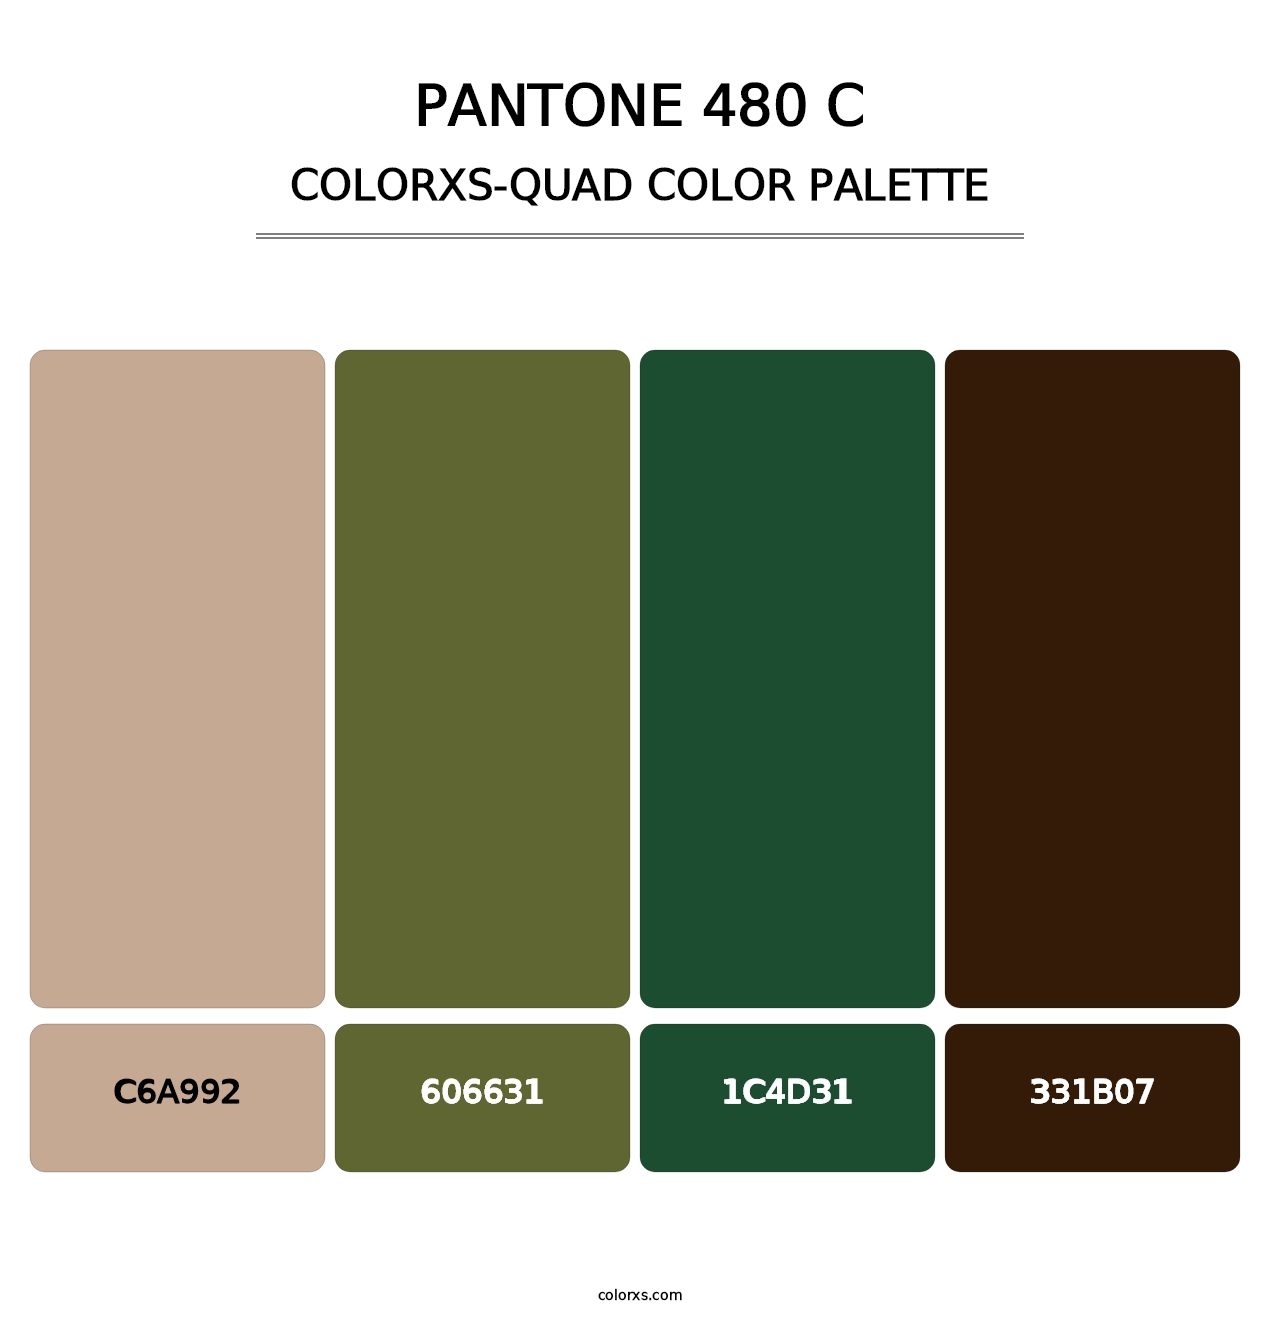 PANTONE 480 C - Colorxs Quad Palette